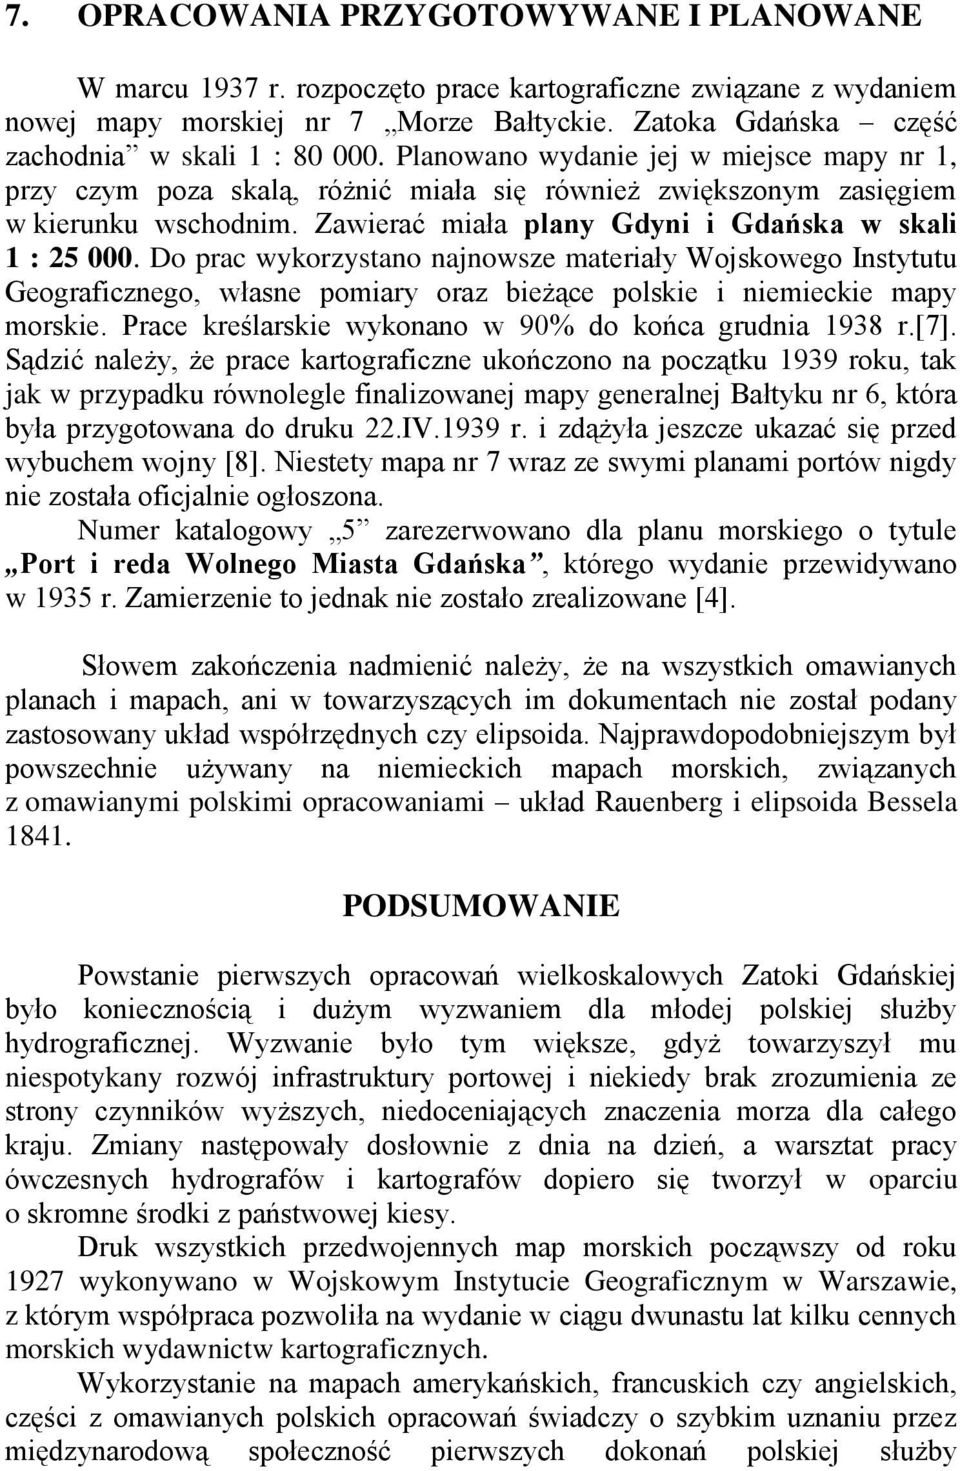 Zawierać miała plany Gdyni i Gdańska w skali 1 : 25 000. Do prac wykorzystano najnowsze materiały Wojskowego Instytutu Geograficznego, własne pomiary oraz bieżące polskie i niemieckie mapy morskie.